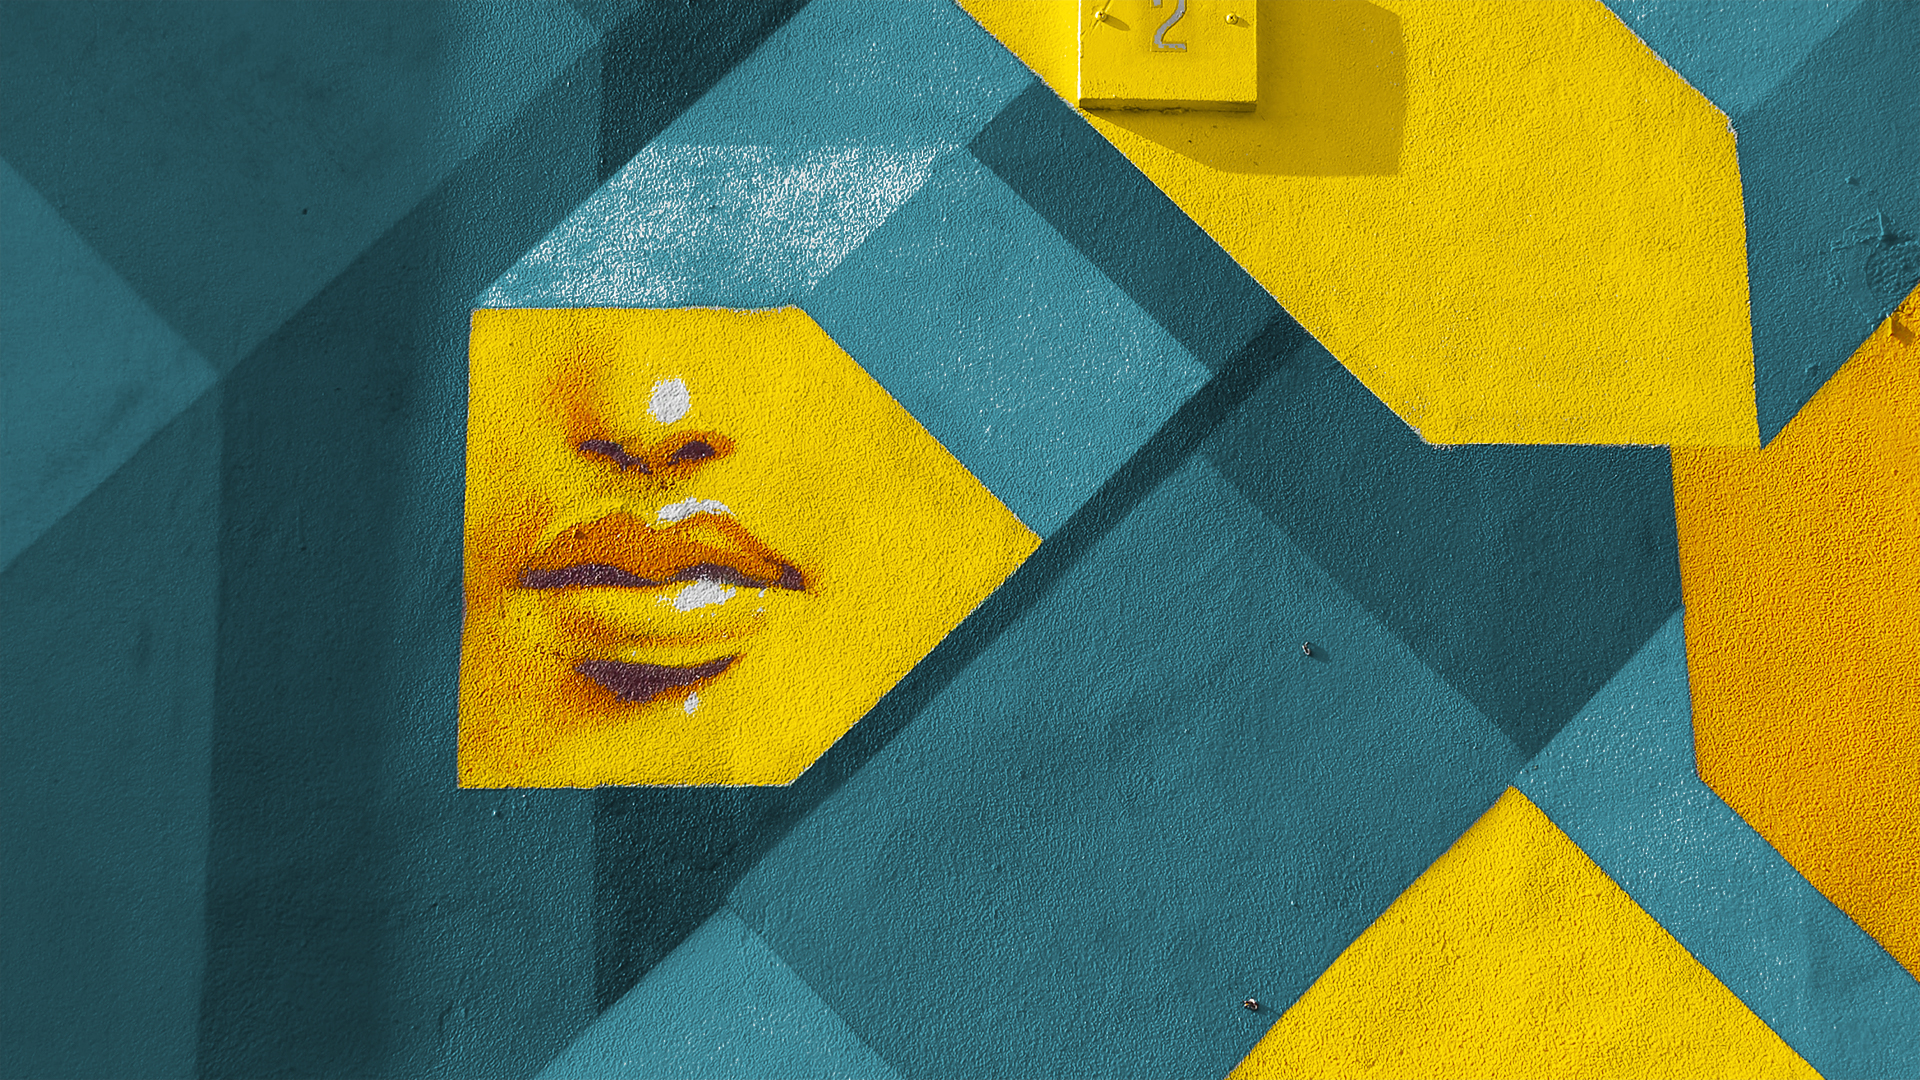 street art jaune et bleu avec visage apparent